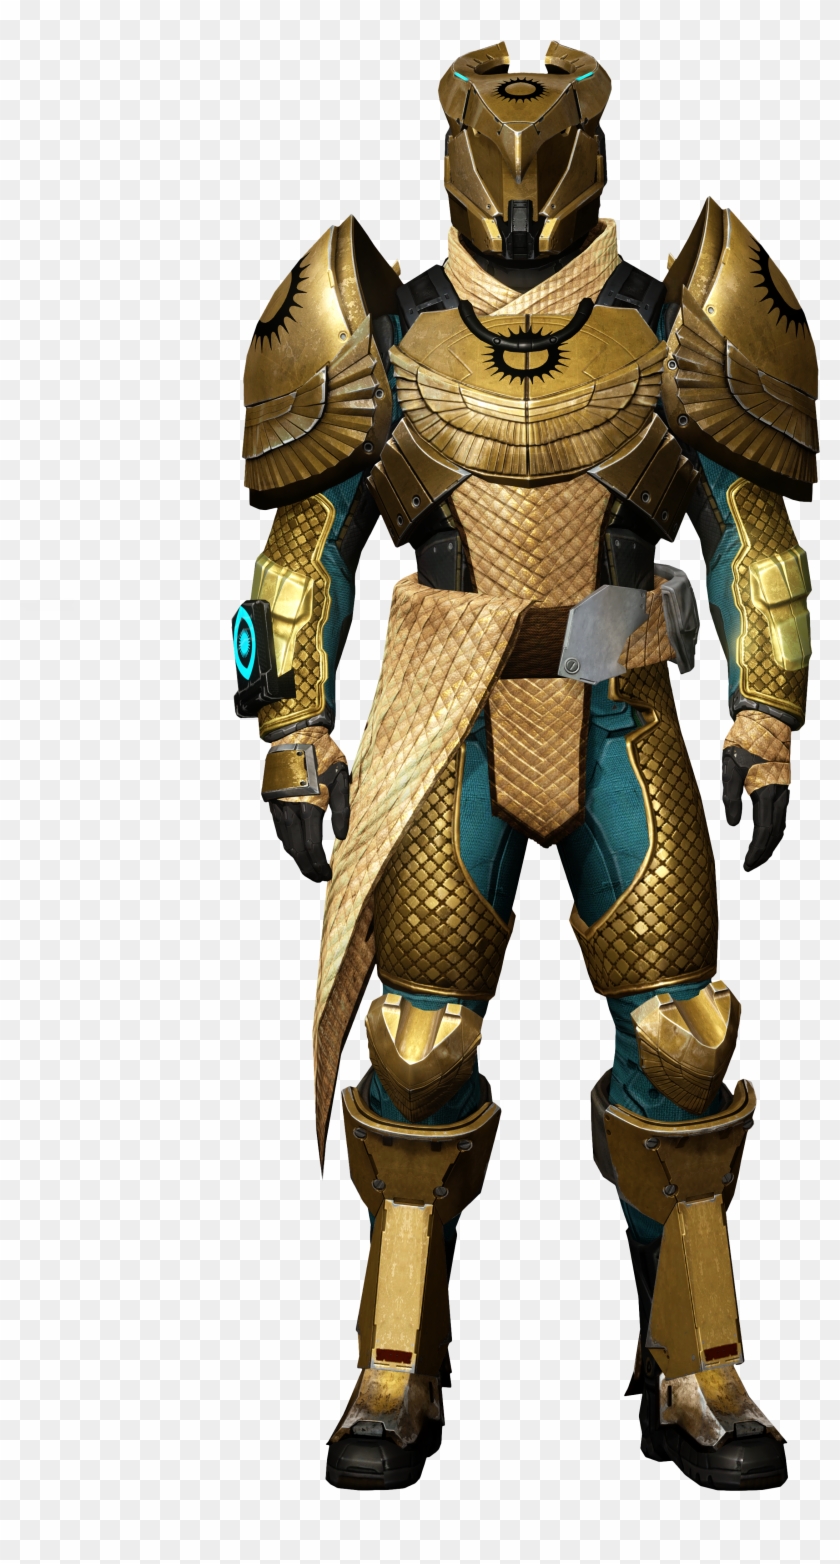 Destiny Titan Png - Destiny Trials Of Osiris Titan Armor Clipart #1439844